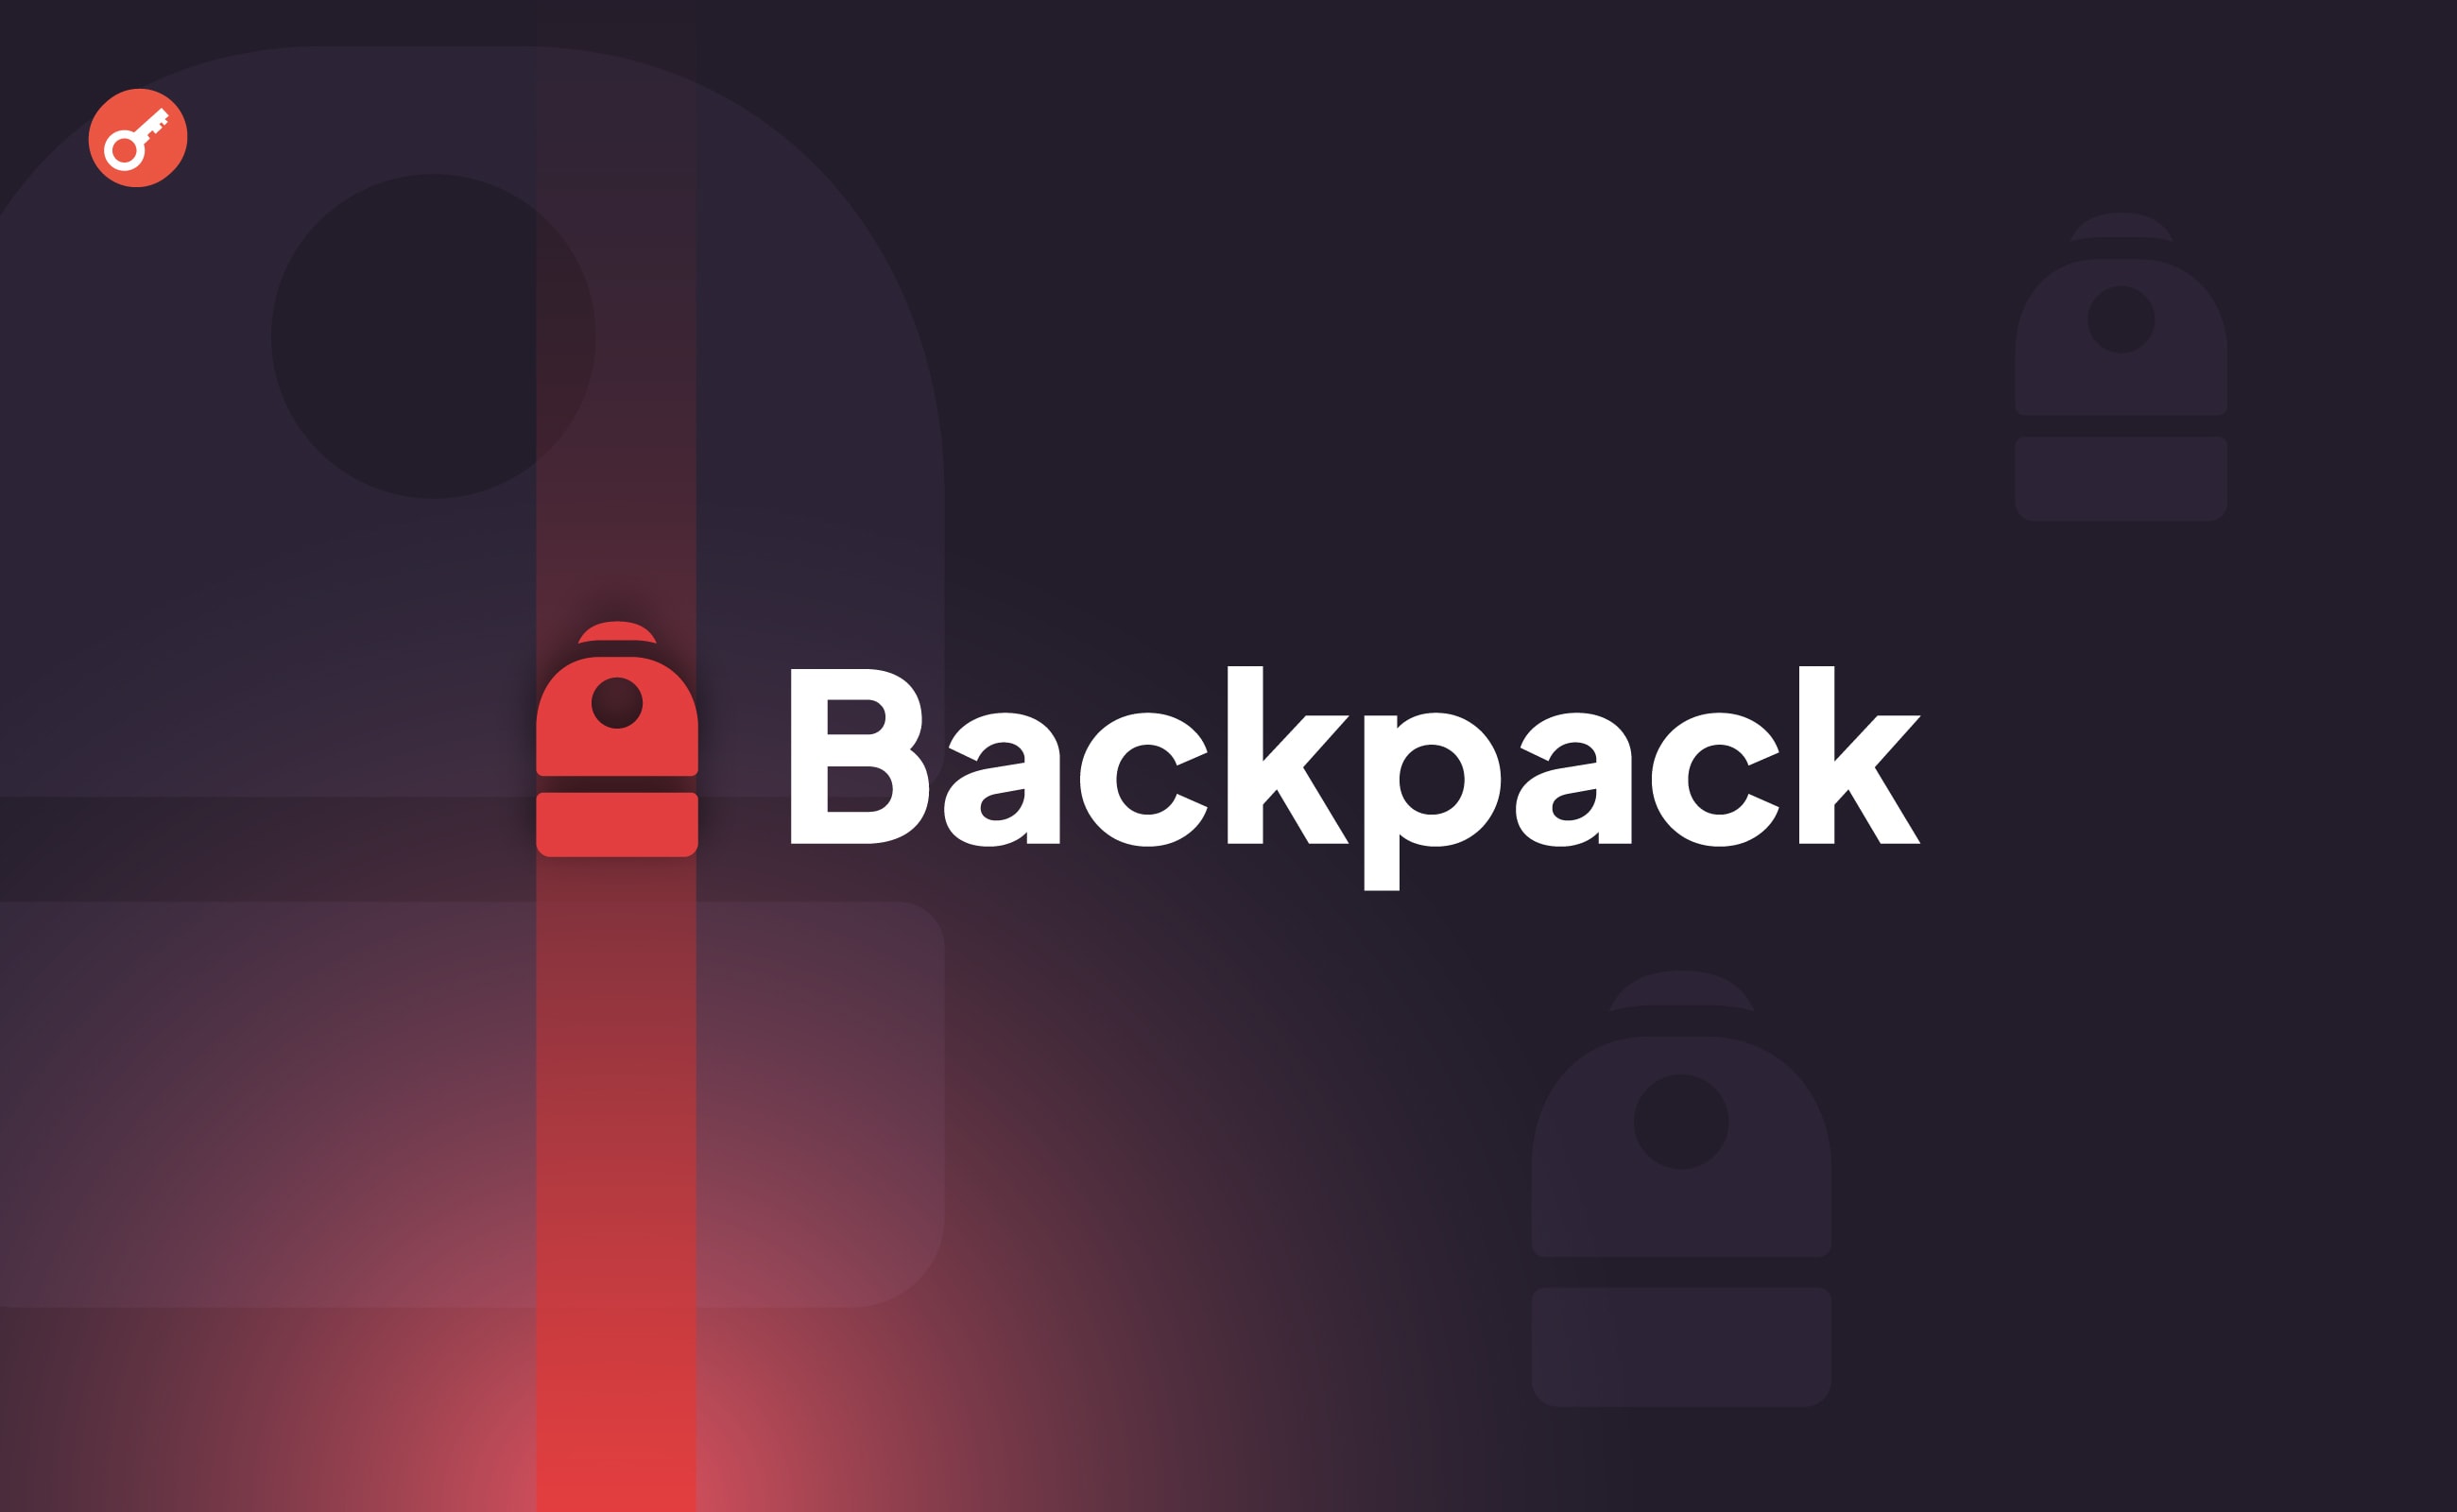 Команда Backpack объявила о раздаче 27 млн W. Заглавный коллаж новости.